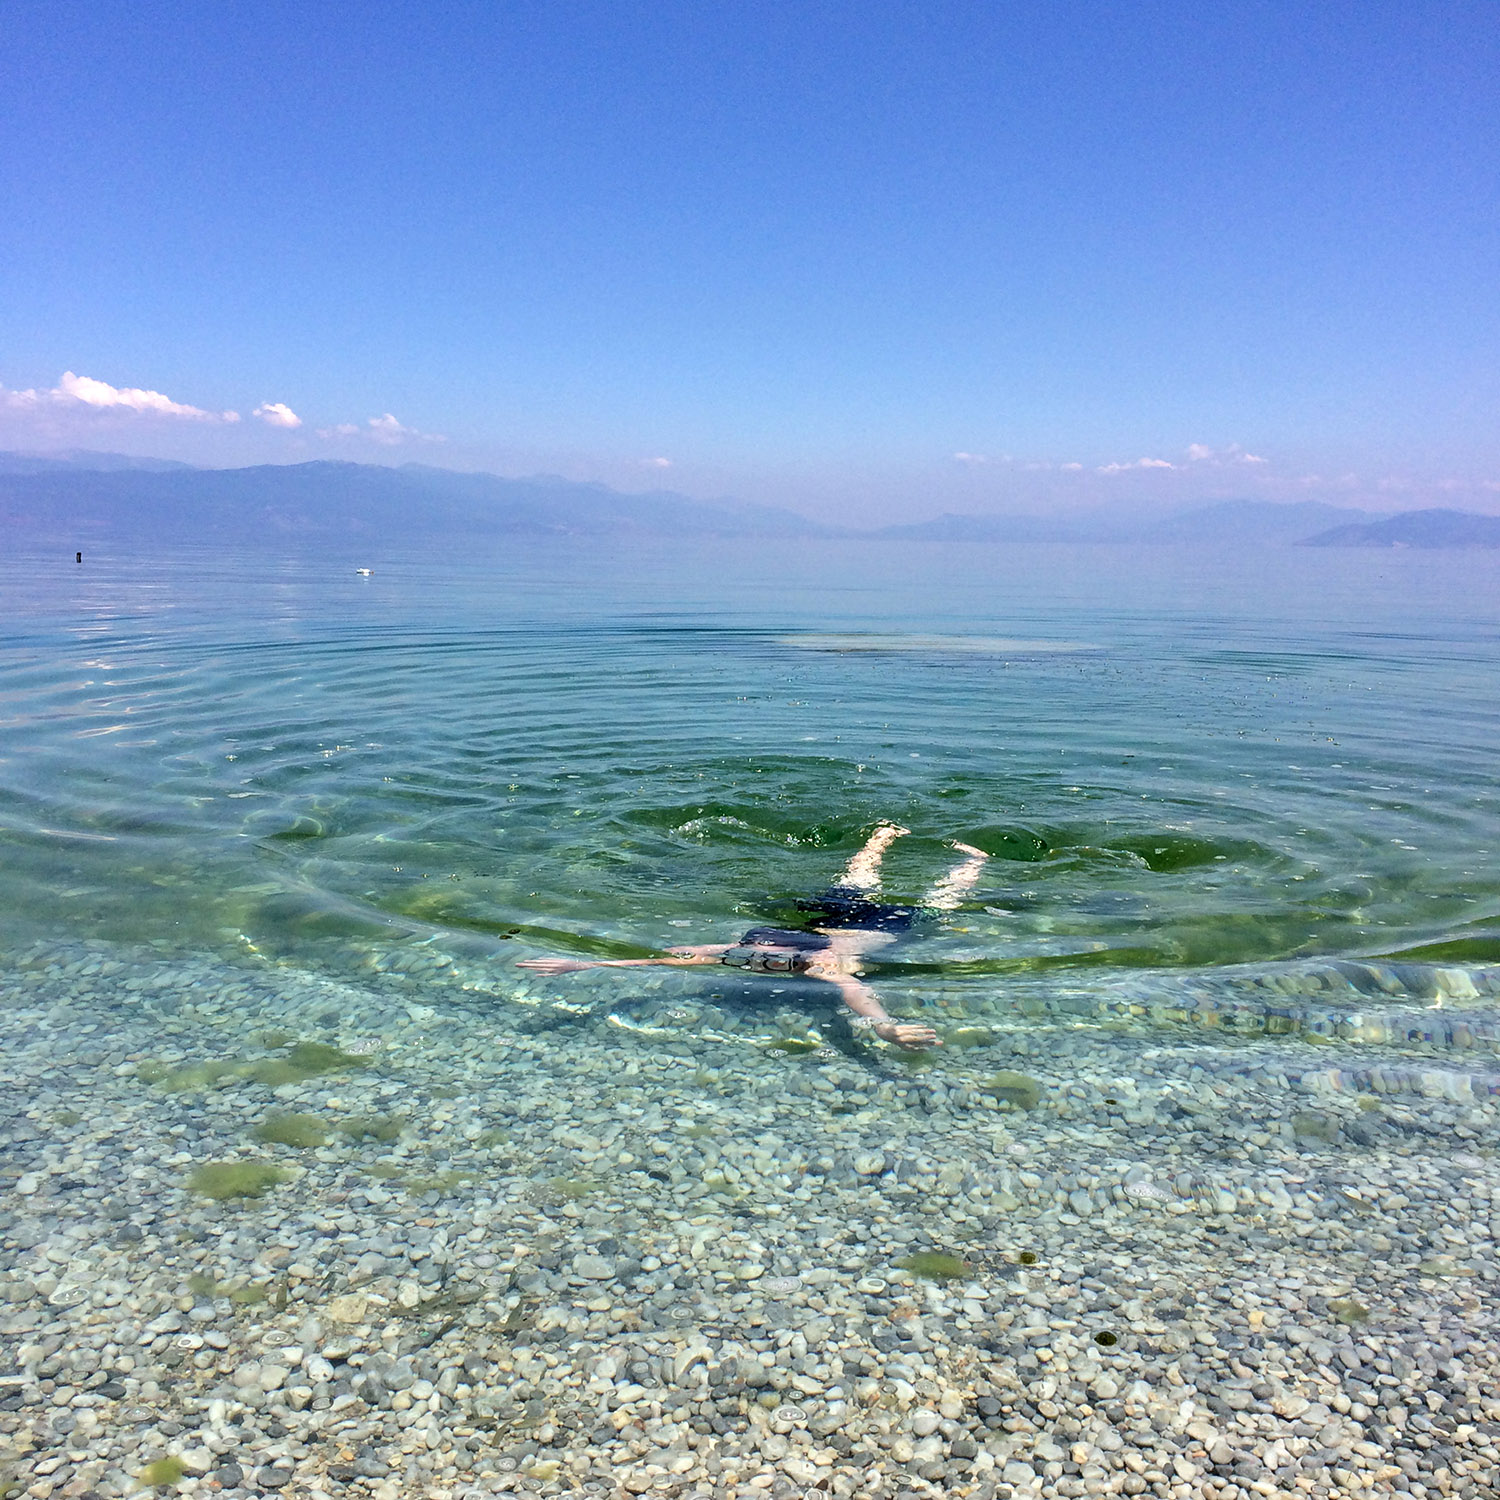   Ohridsjön i Makedonien. En liten dykare närmar sig stranden.&nbsp;  